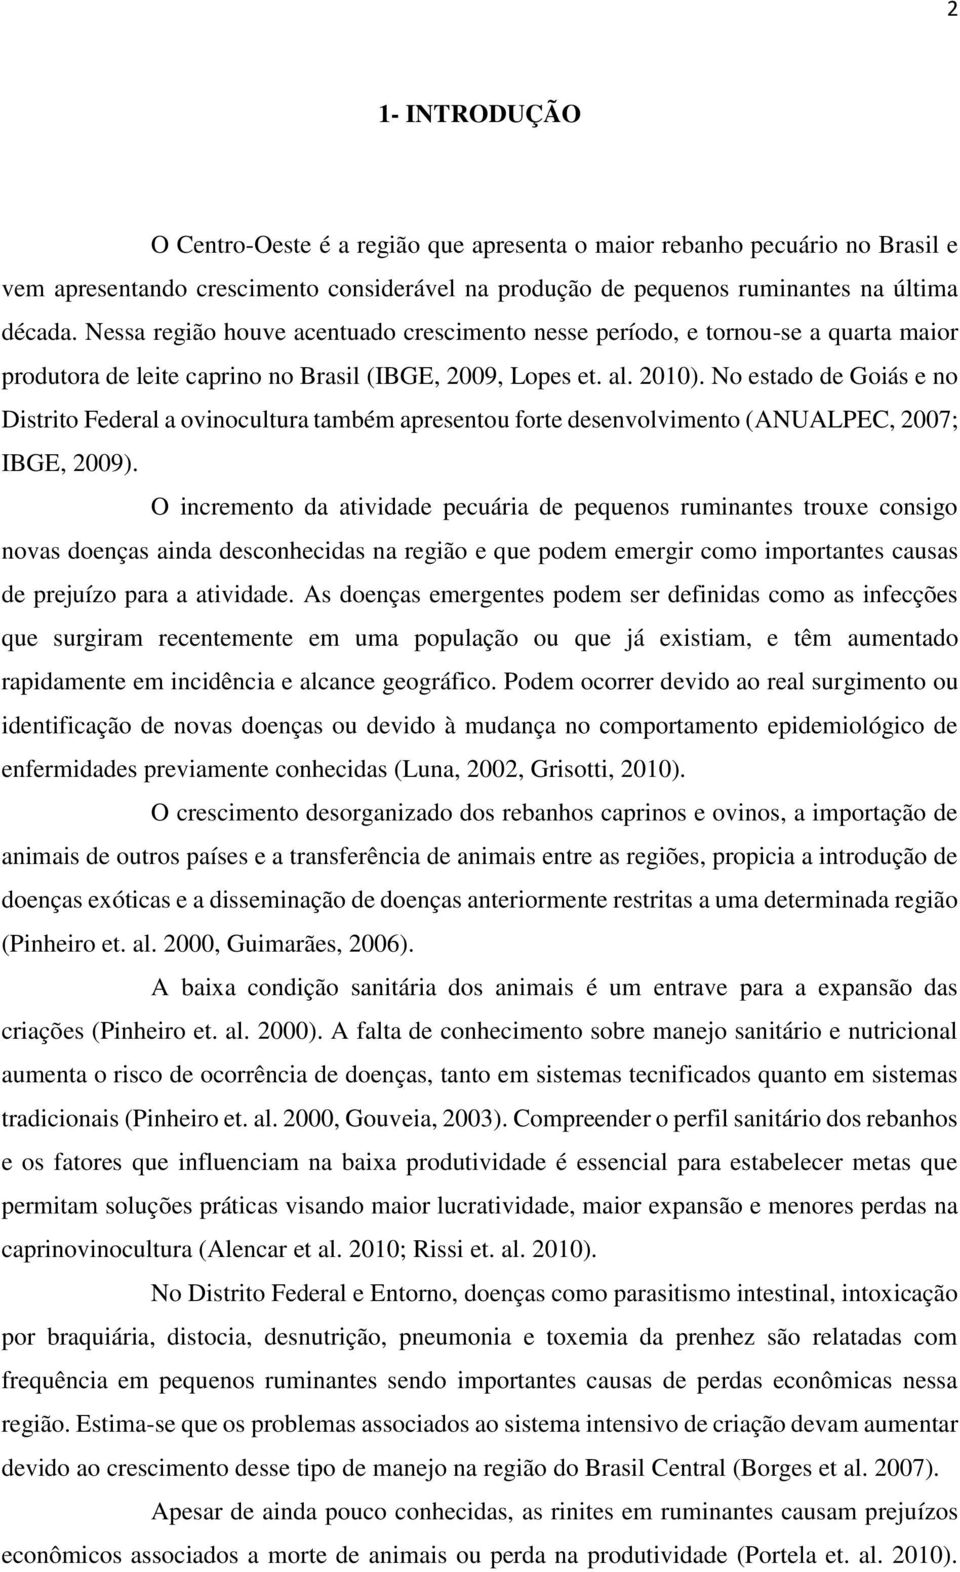 No estado de Goiás e no Distrito Federal a ovinocultura também apresentou forte desenvolvimento (ANUALPEC, 2007; IBGE, 2009).